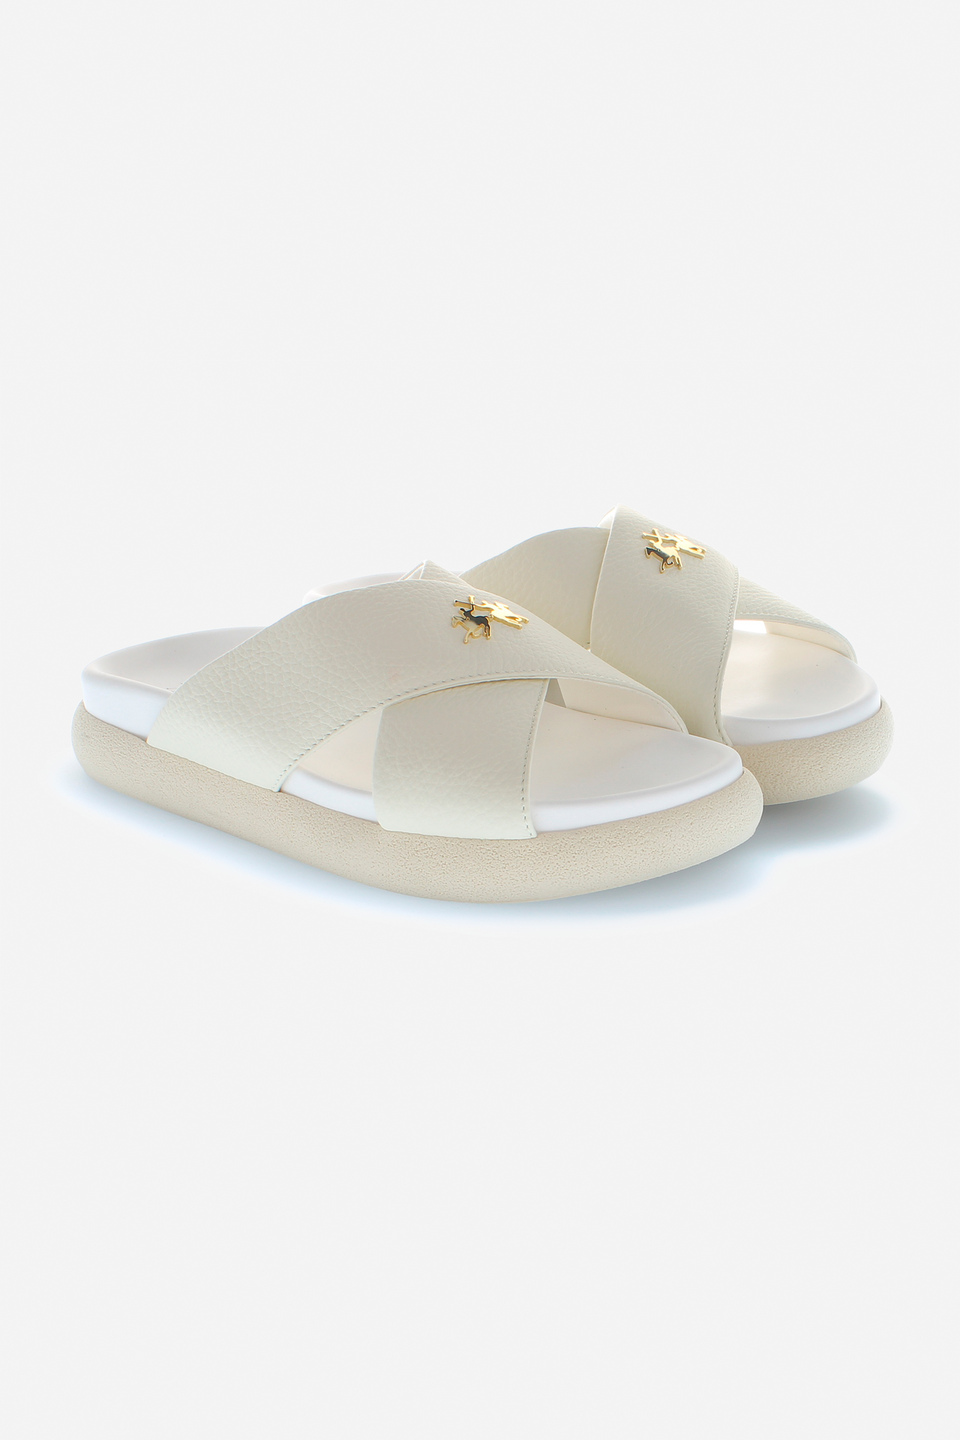 Buy Louis Vuitton Sandals Woman online